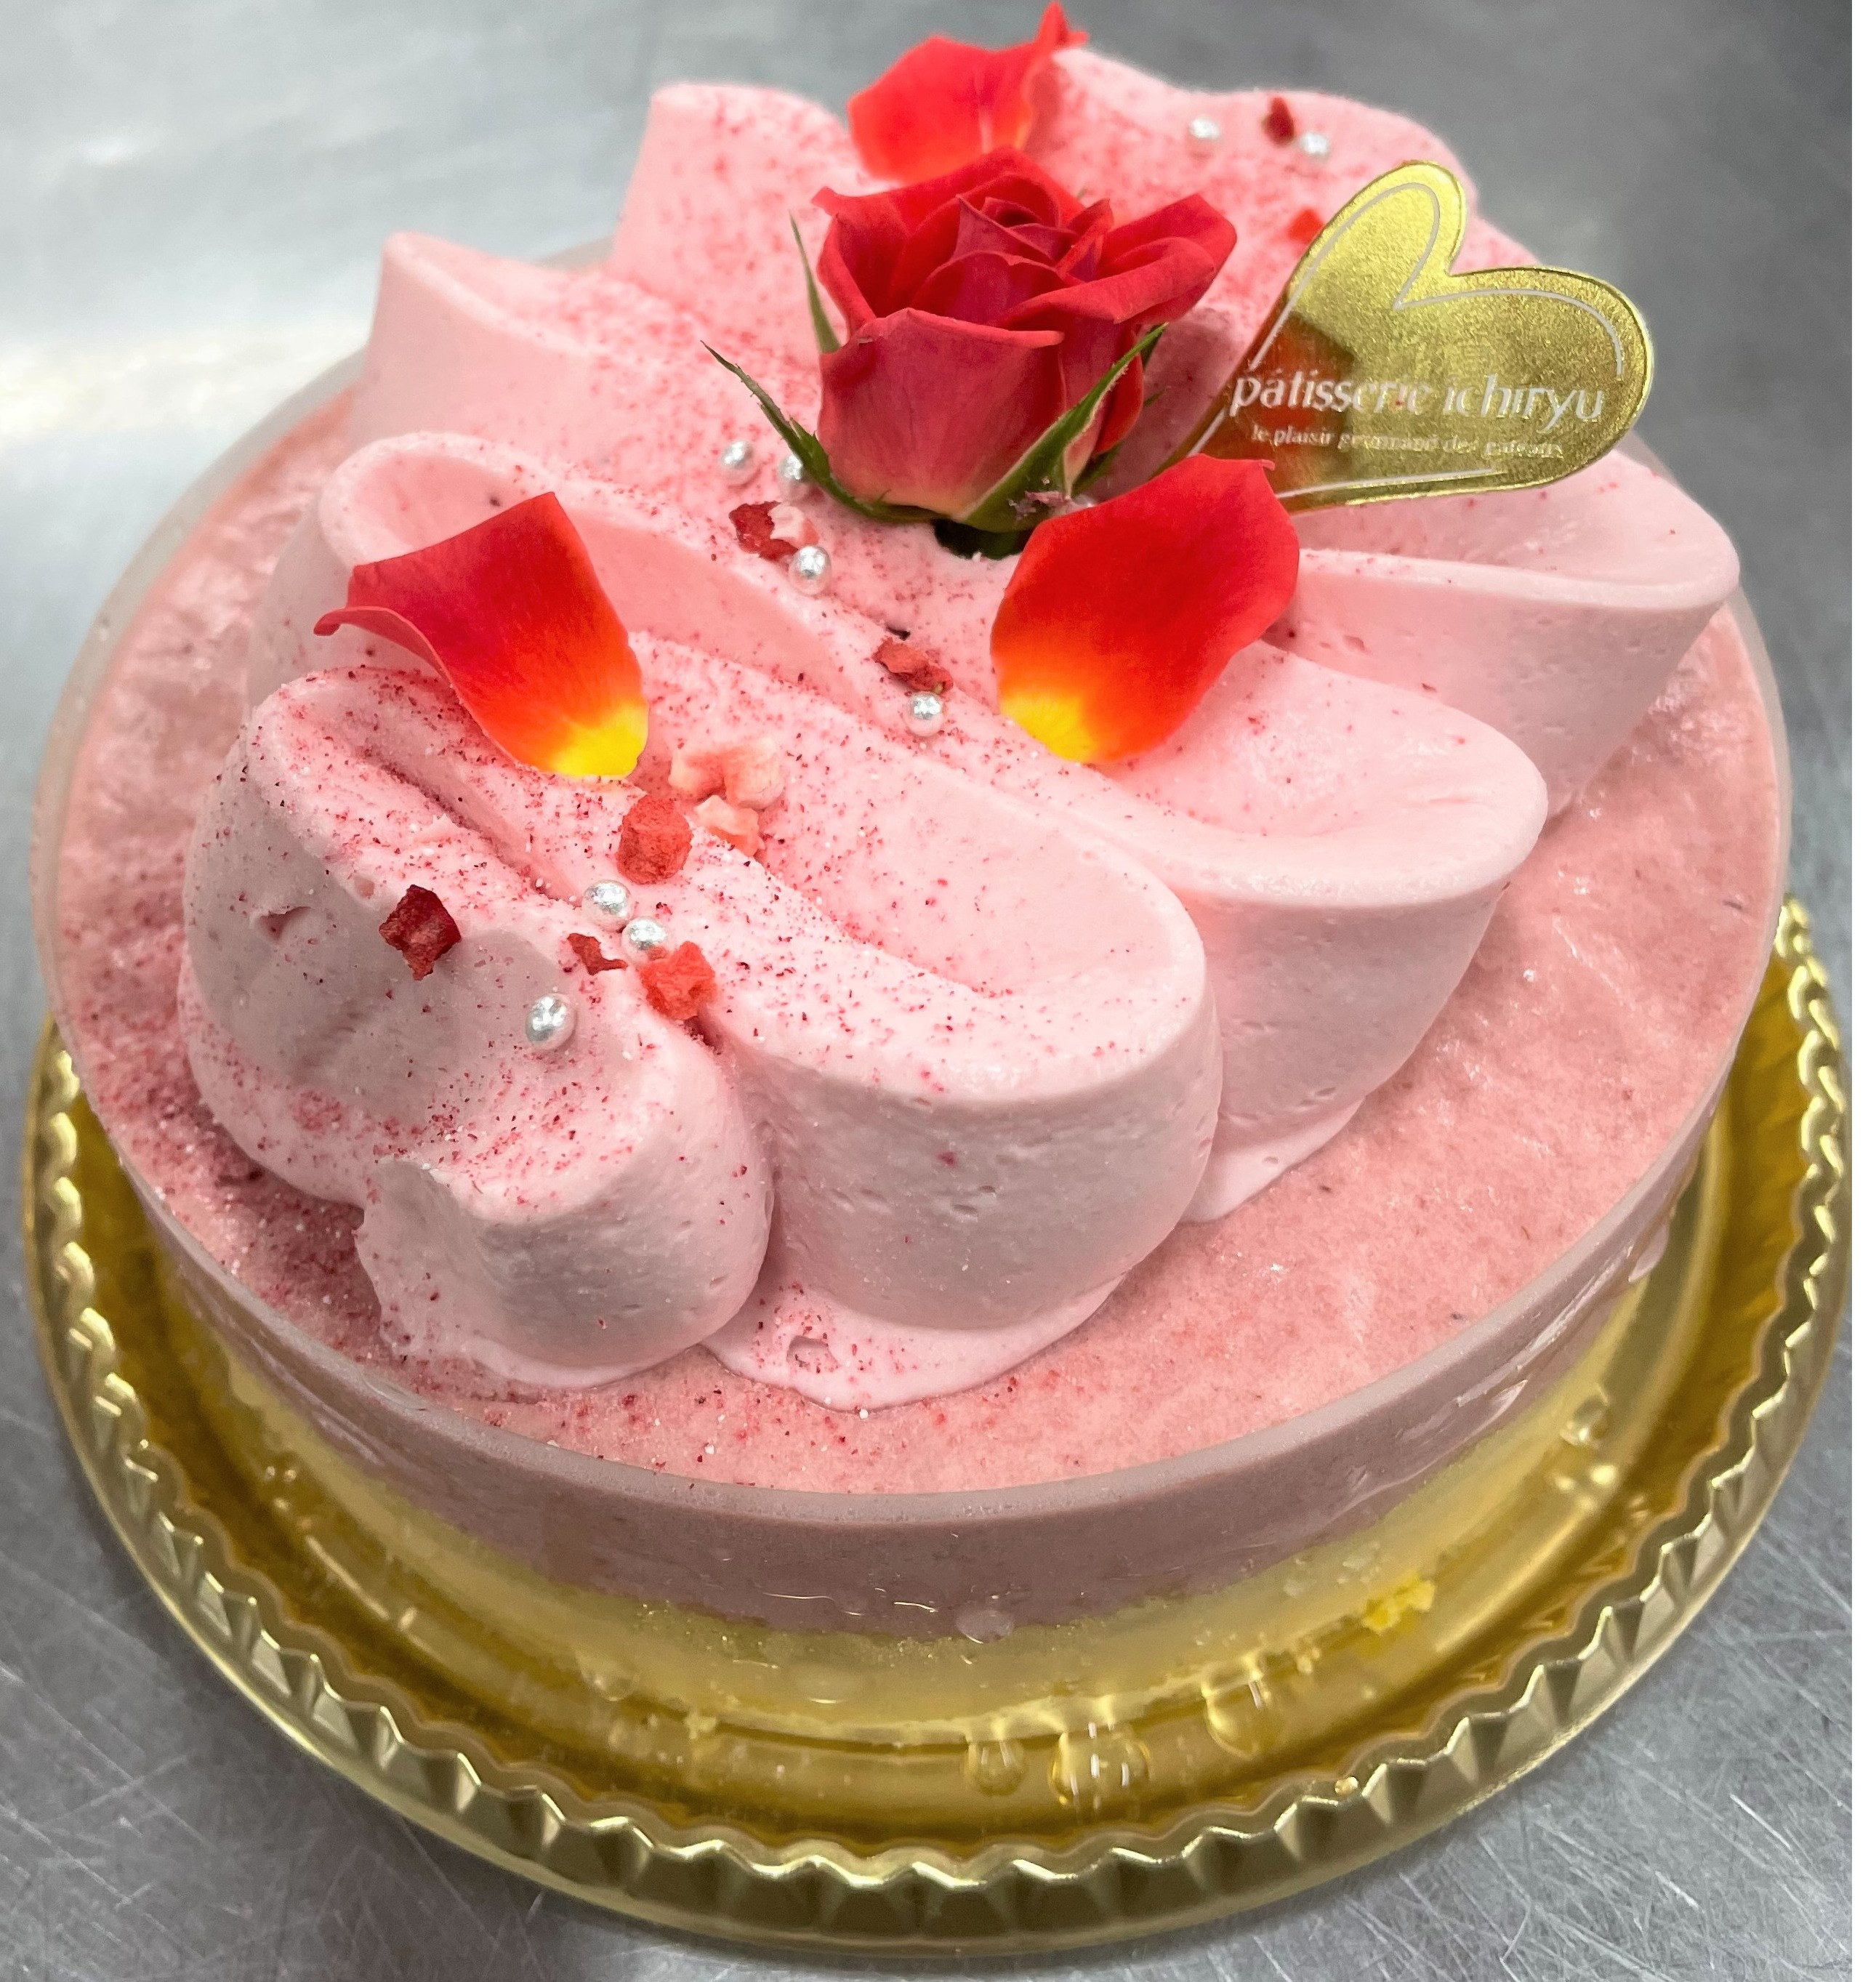 限定 苺のレアチーズケーキ いちりゅう ショップブログ 大丸福岡天神店